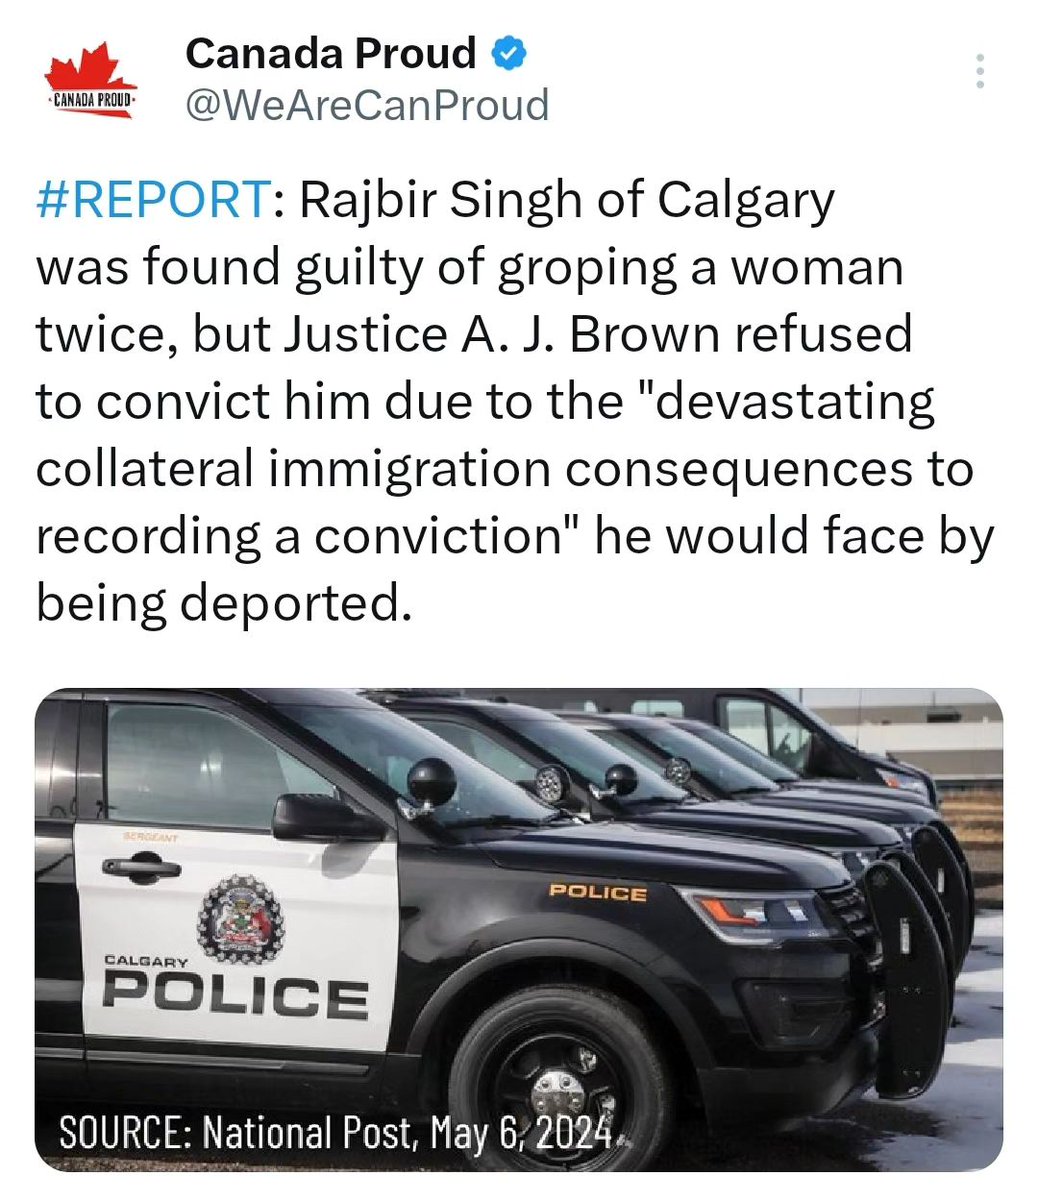 Rajbir Singh de Calgary reconnu coupable d'avoir peloté une femme à 2 reprises, le juge Brown a refusé de le condamner, raison «conséquences collatérales dévastatrices en matière d'immigration de l'enregistrement d'1 condamnation» auxquelles il serait confronté en cas d'expulsion